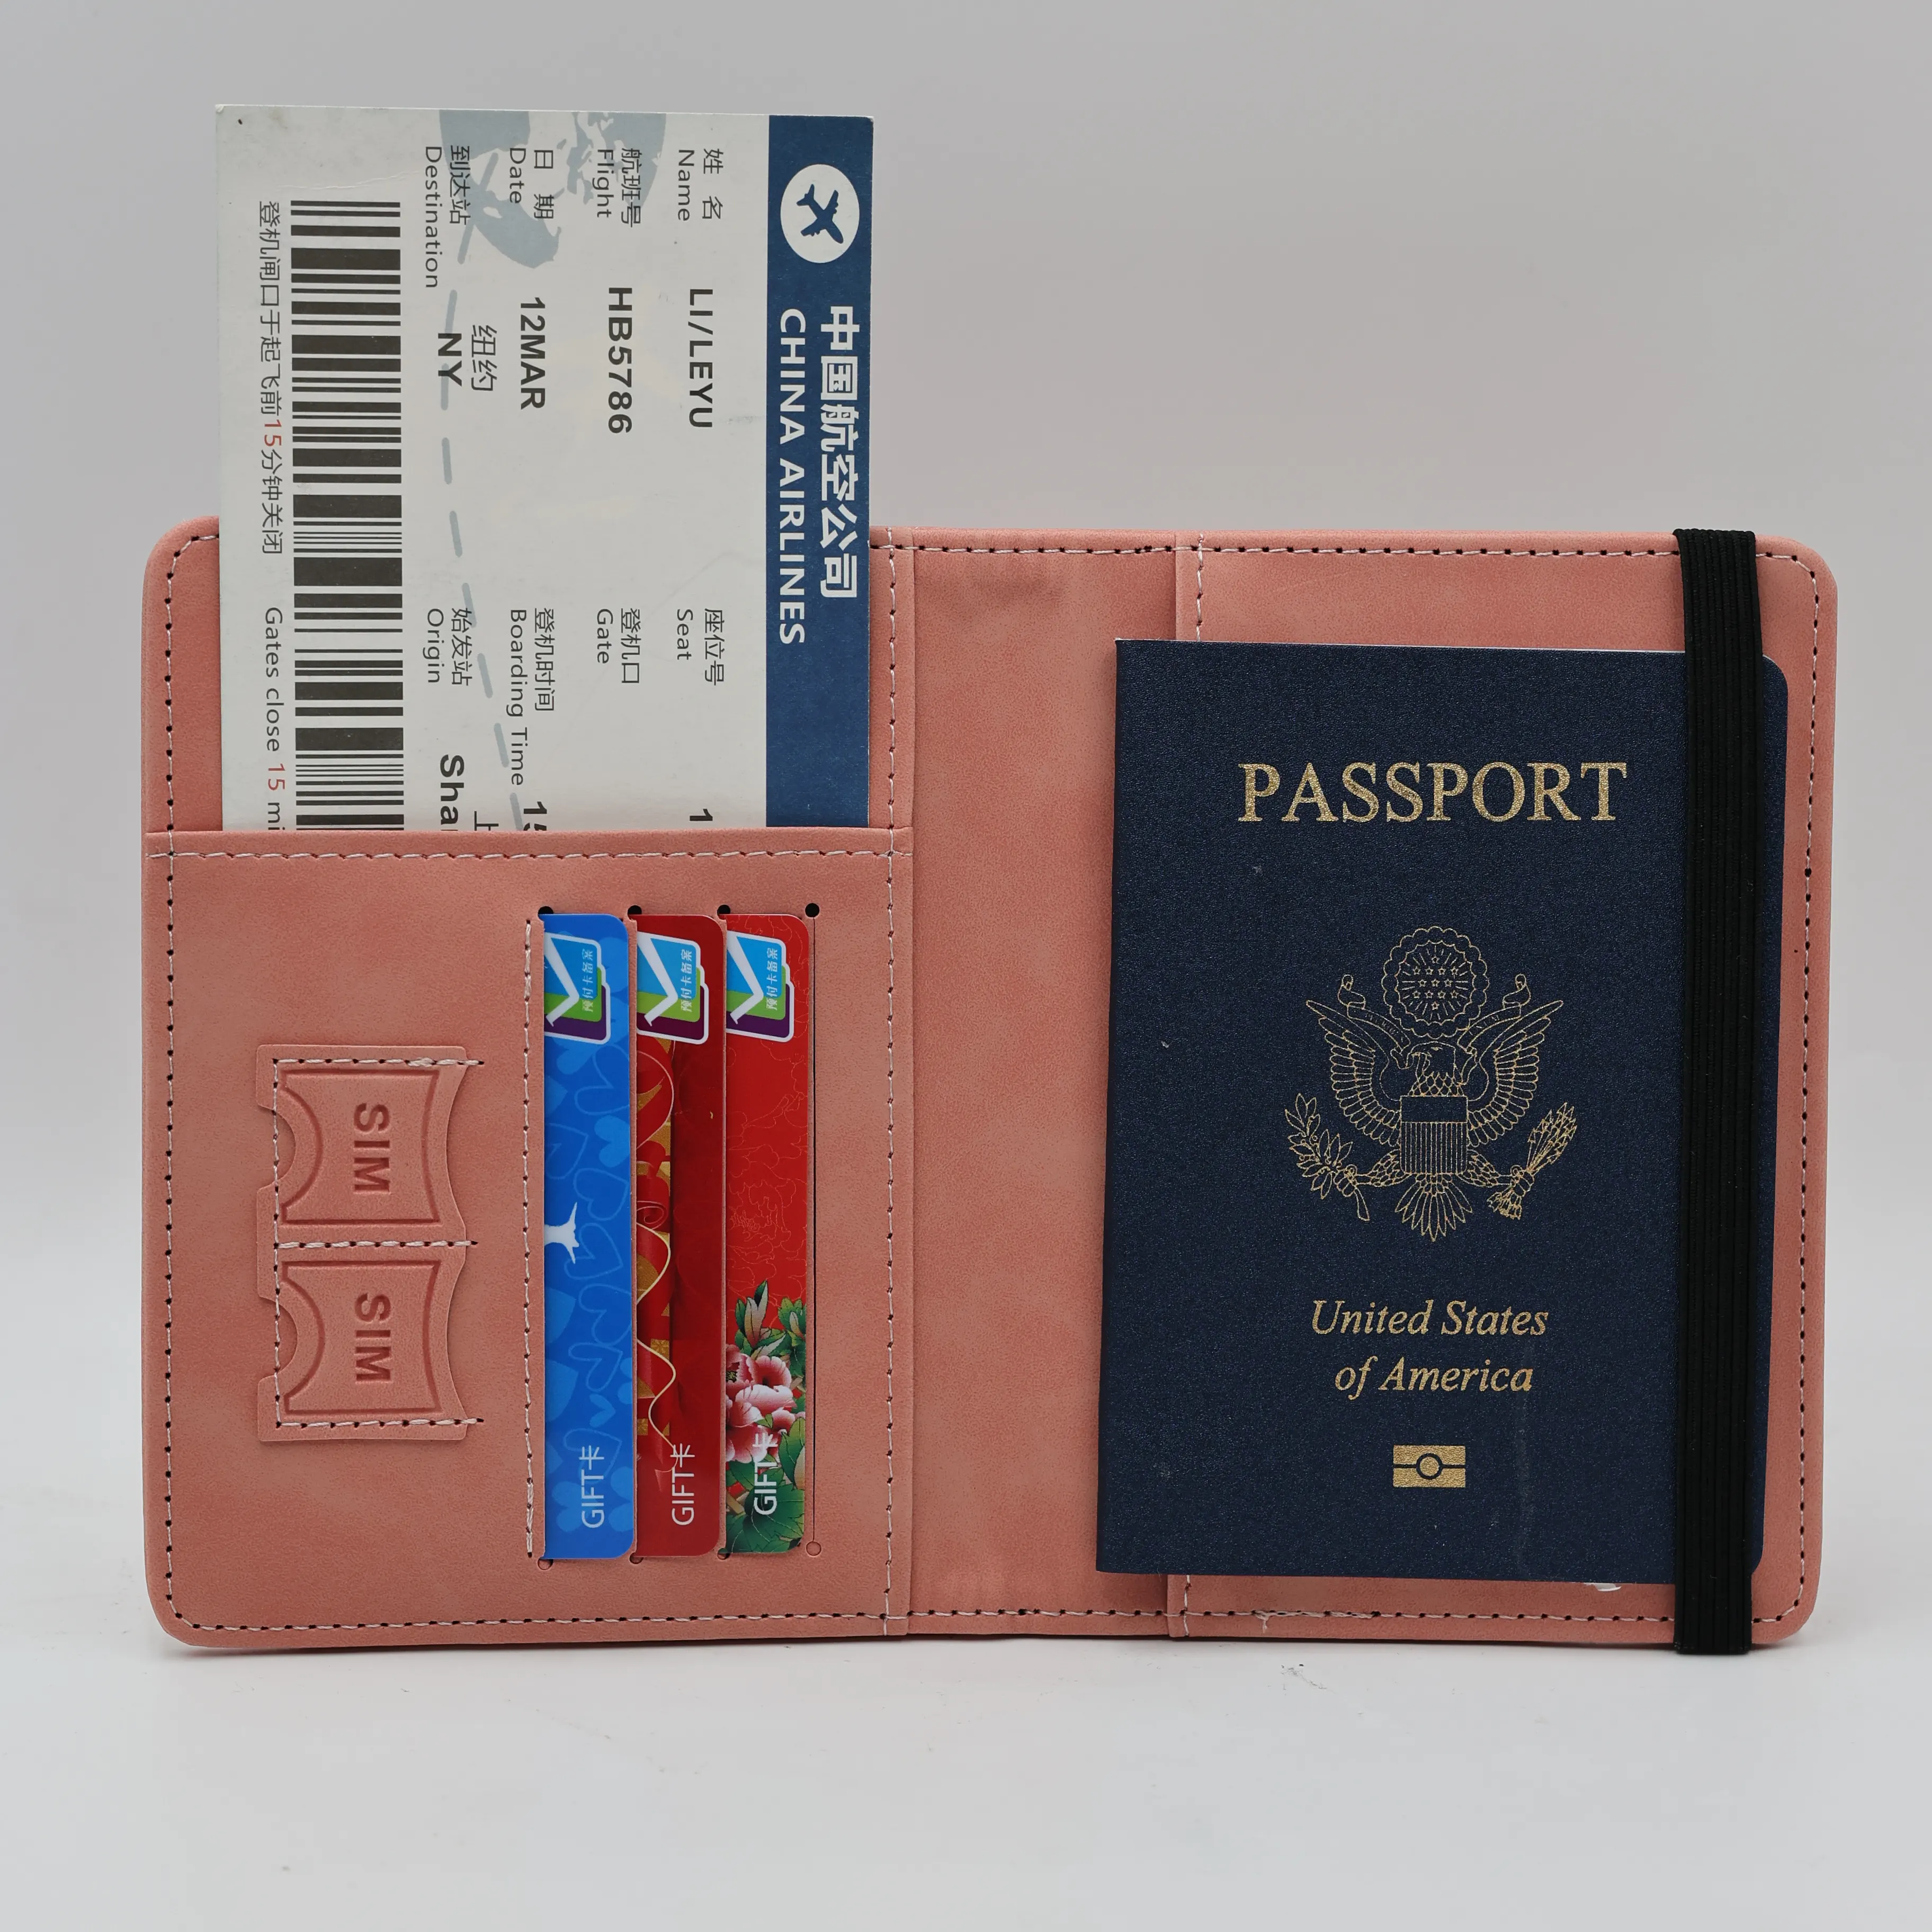 Estuche para pasaporte con logotipo de EE. UU., bolsa con certificado de sensación de piel, portabilidad, soporte para pasaporte de PU, protector de pasaporte de cuero para viajes de América